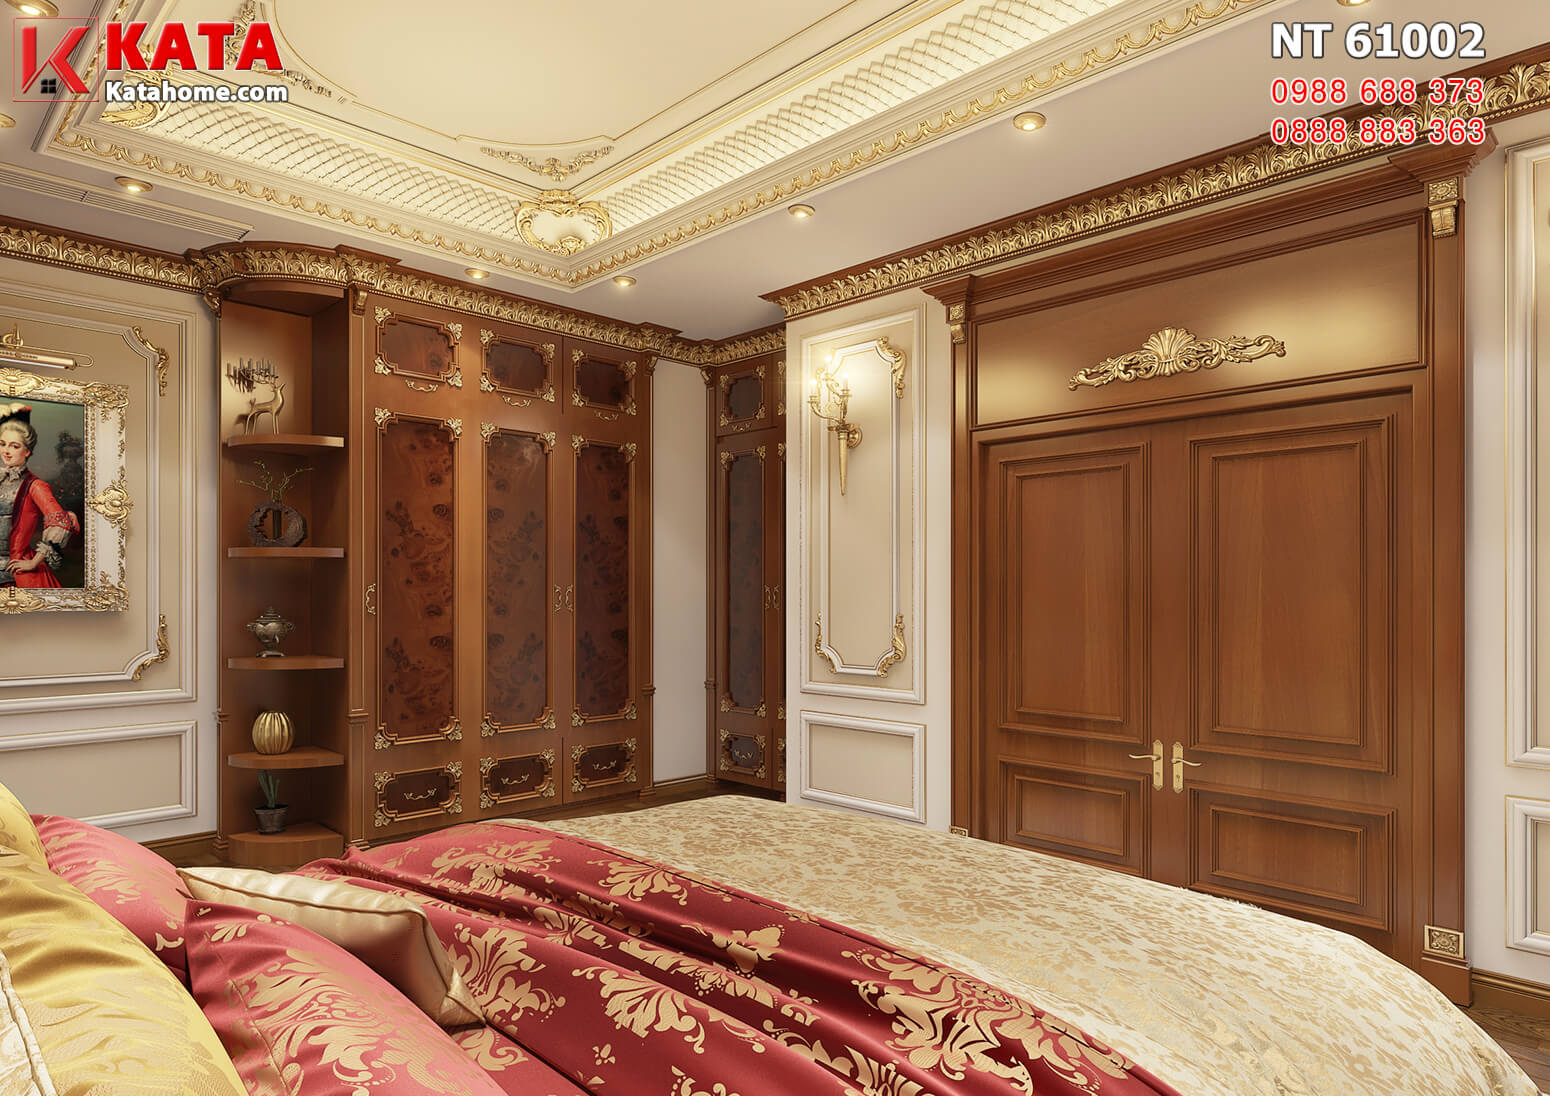 Hình ảnh: Phòng ngủ tầng 2 mang đậm dấu ấn của lối kiến trúc nội thất tân cổ điển